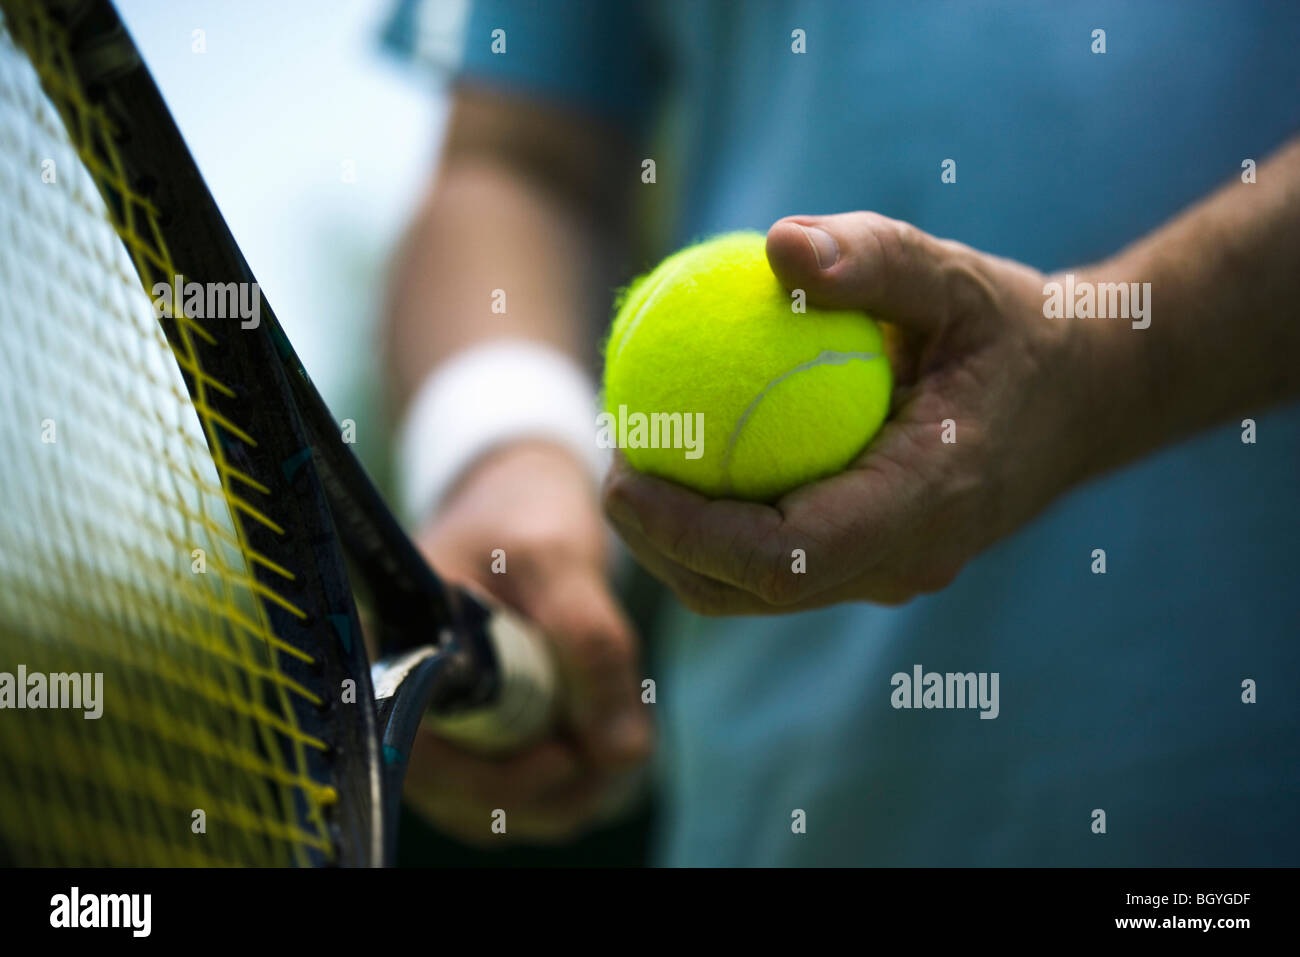 Joueur de tennis se préparer à servir, cropped Banque D'Images